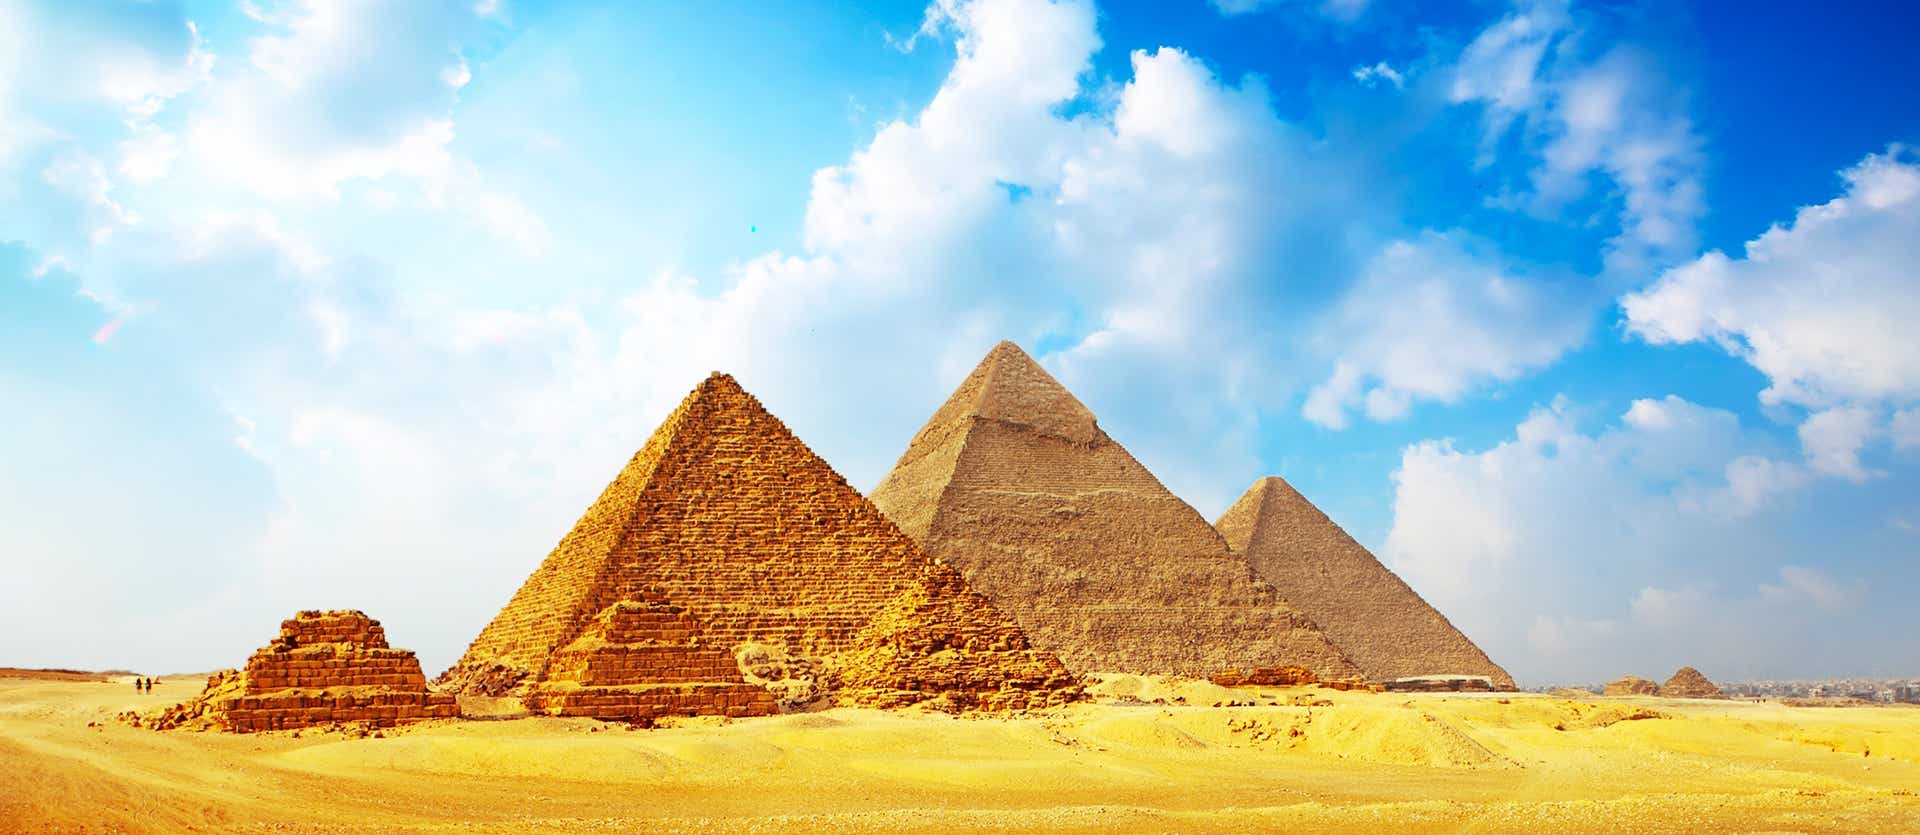 Pyramids of Giza <span class="iconos separador"></span> Egypt